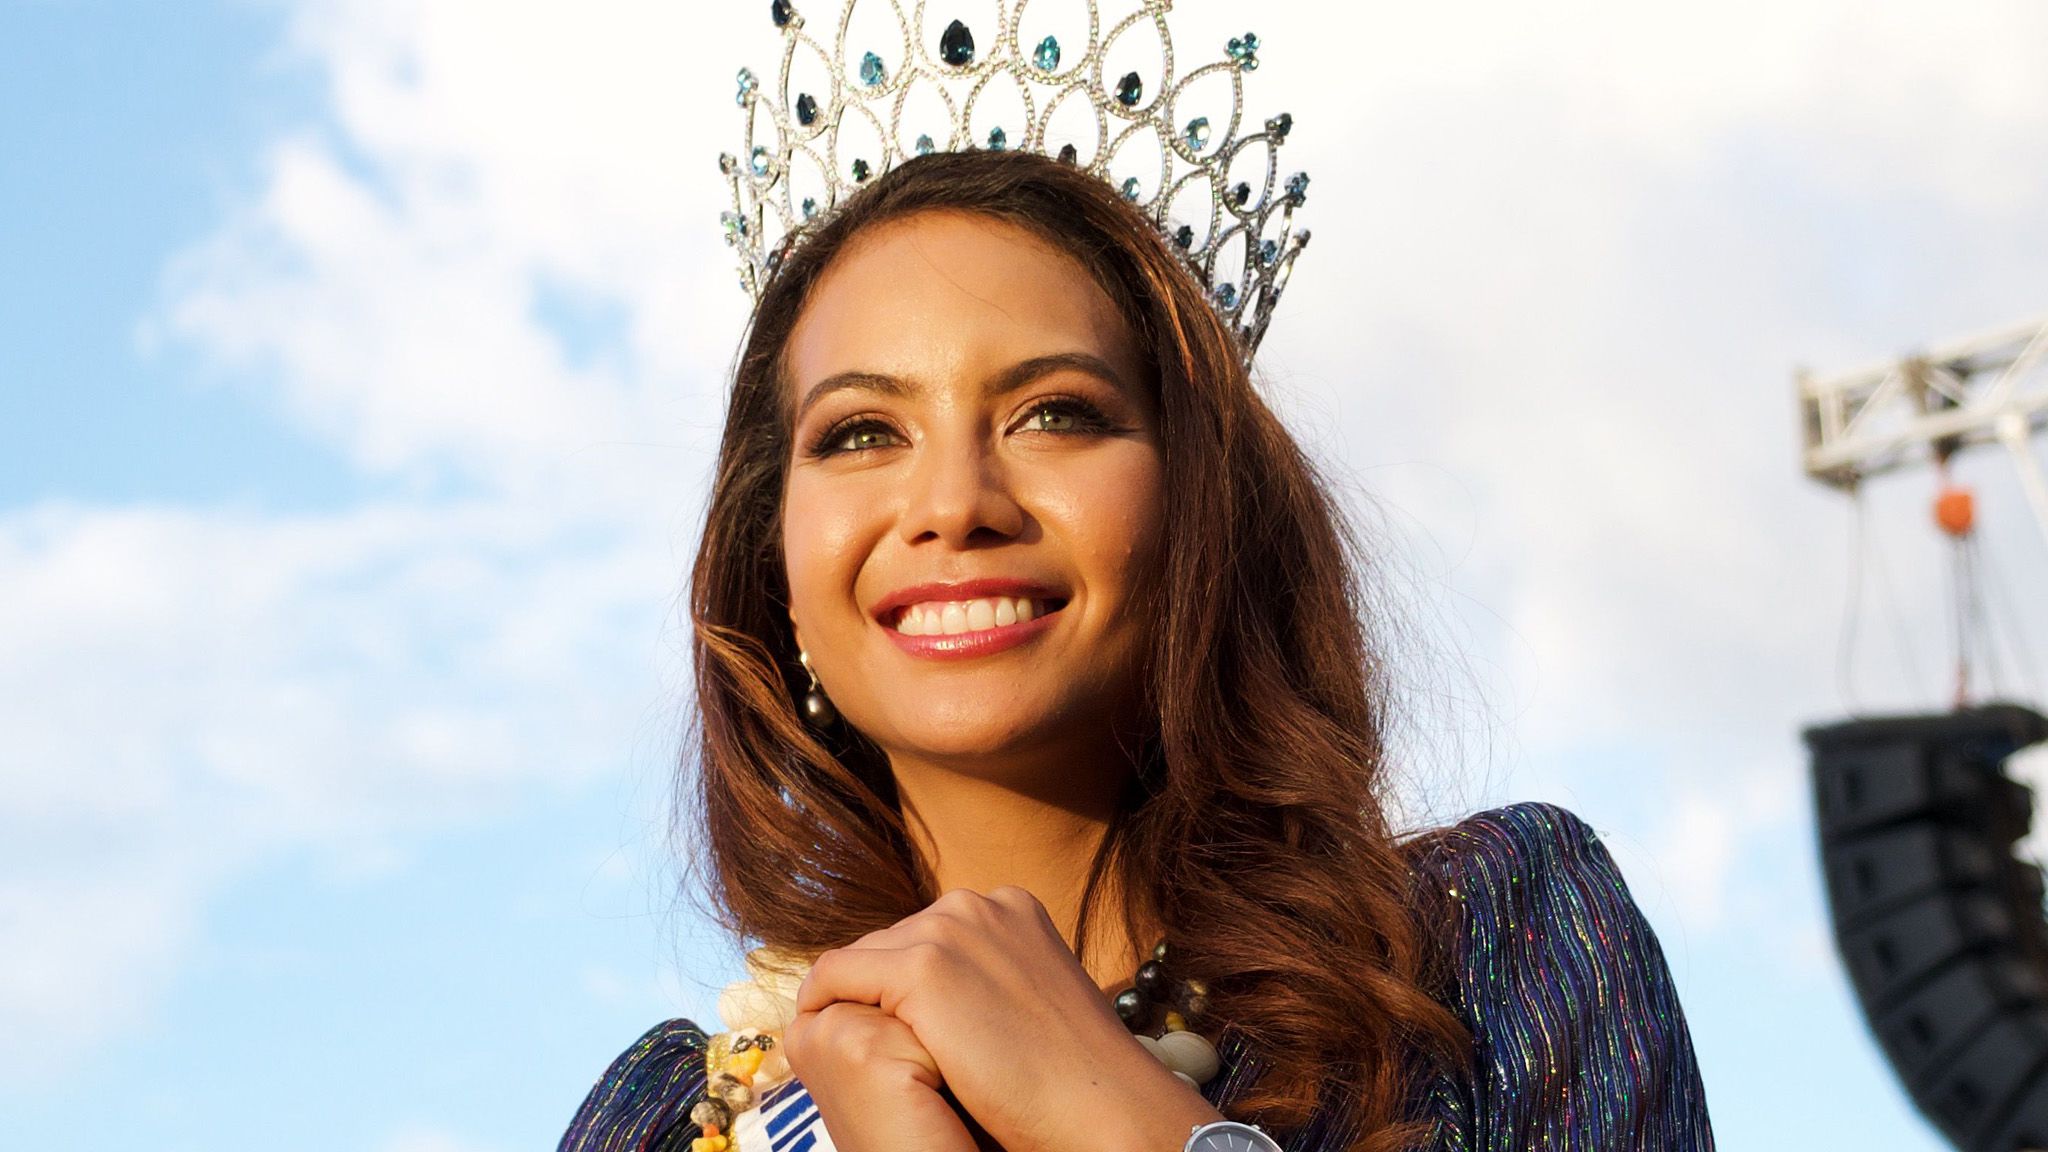 Vaimalama Chaves en vacances en Martinique : Miss France 2019 fait craquer les internautes !